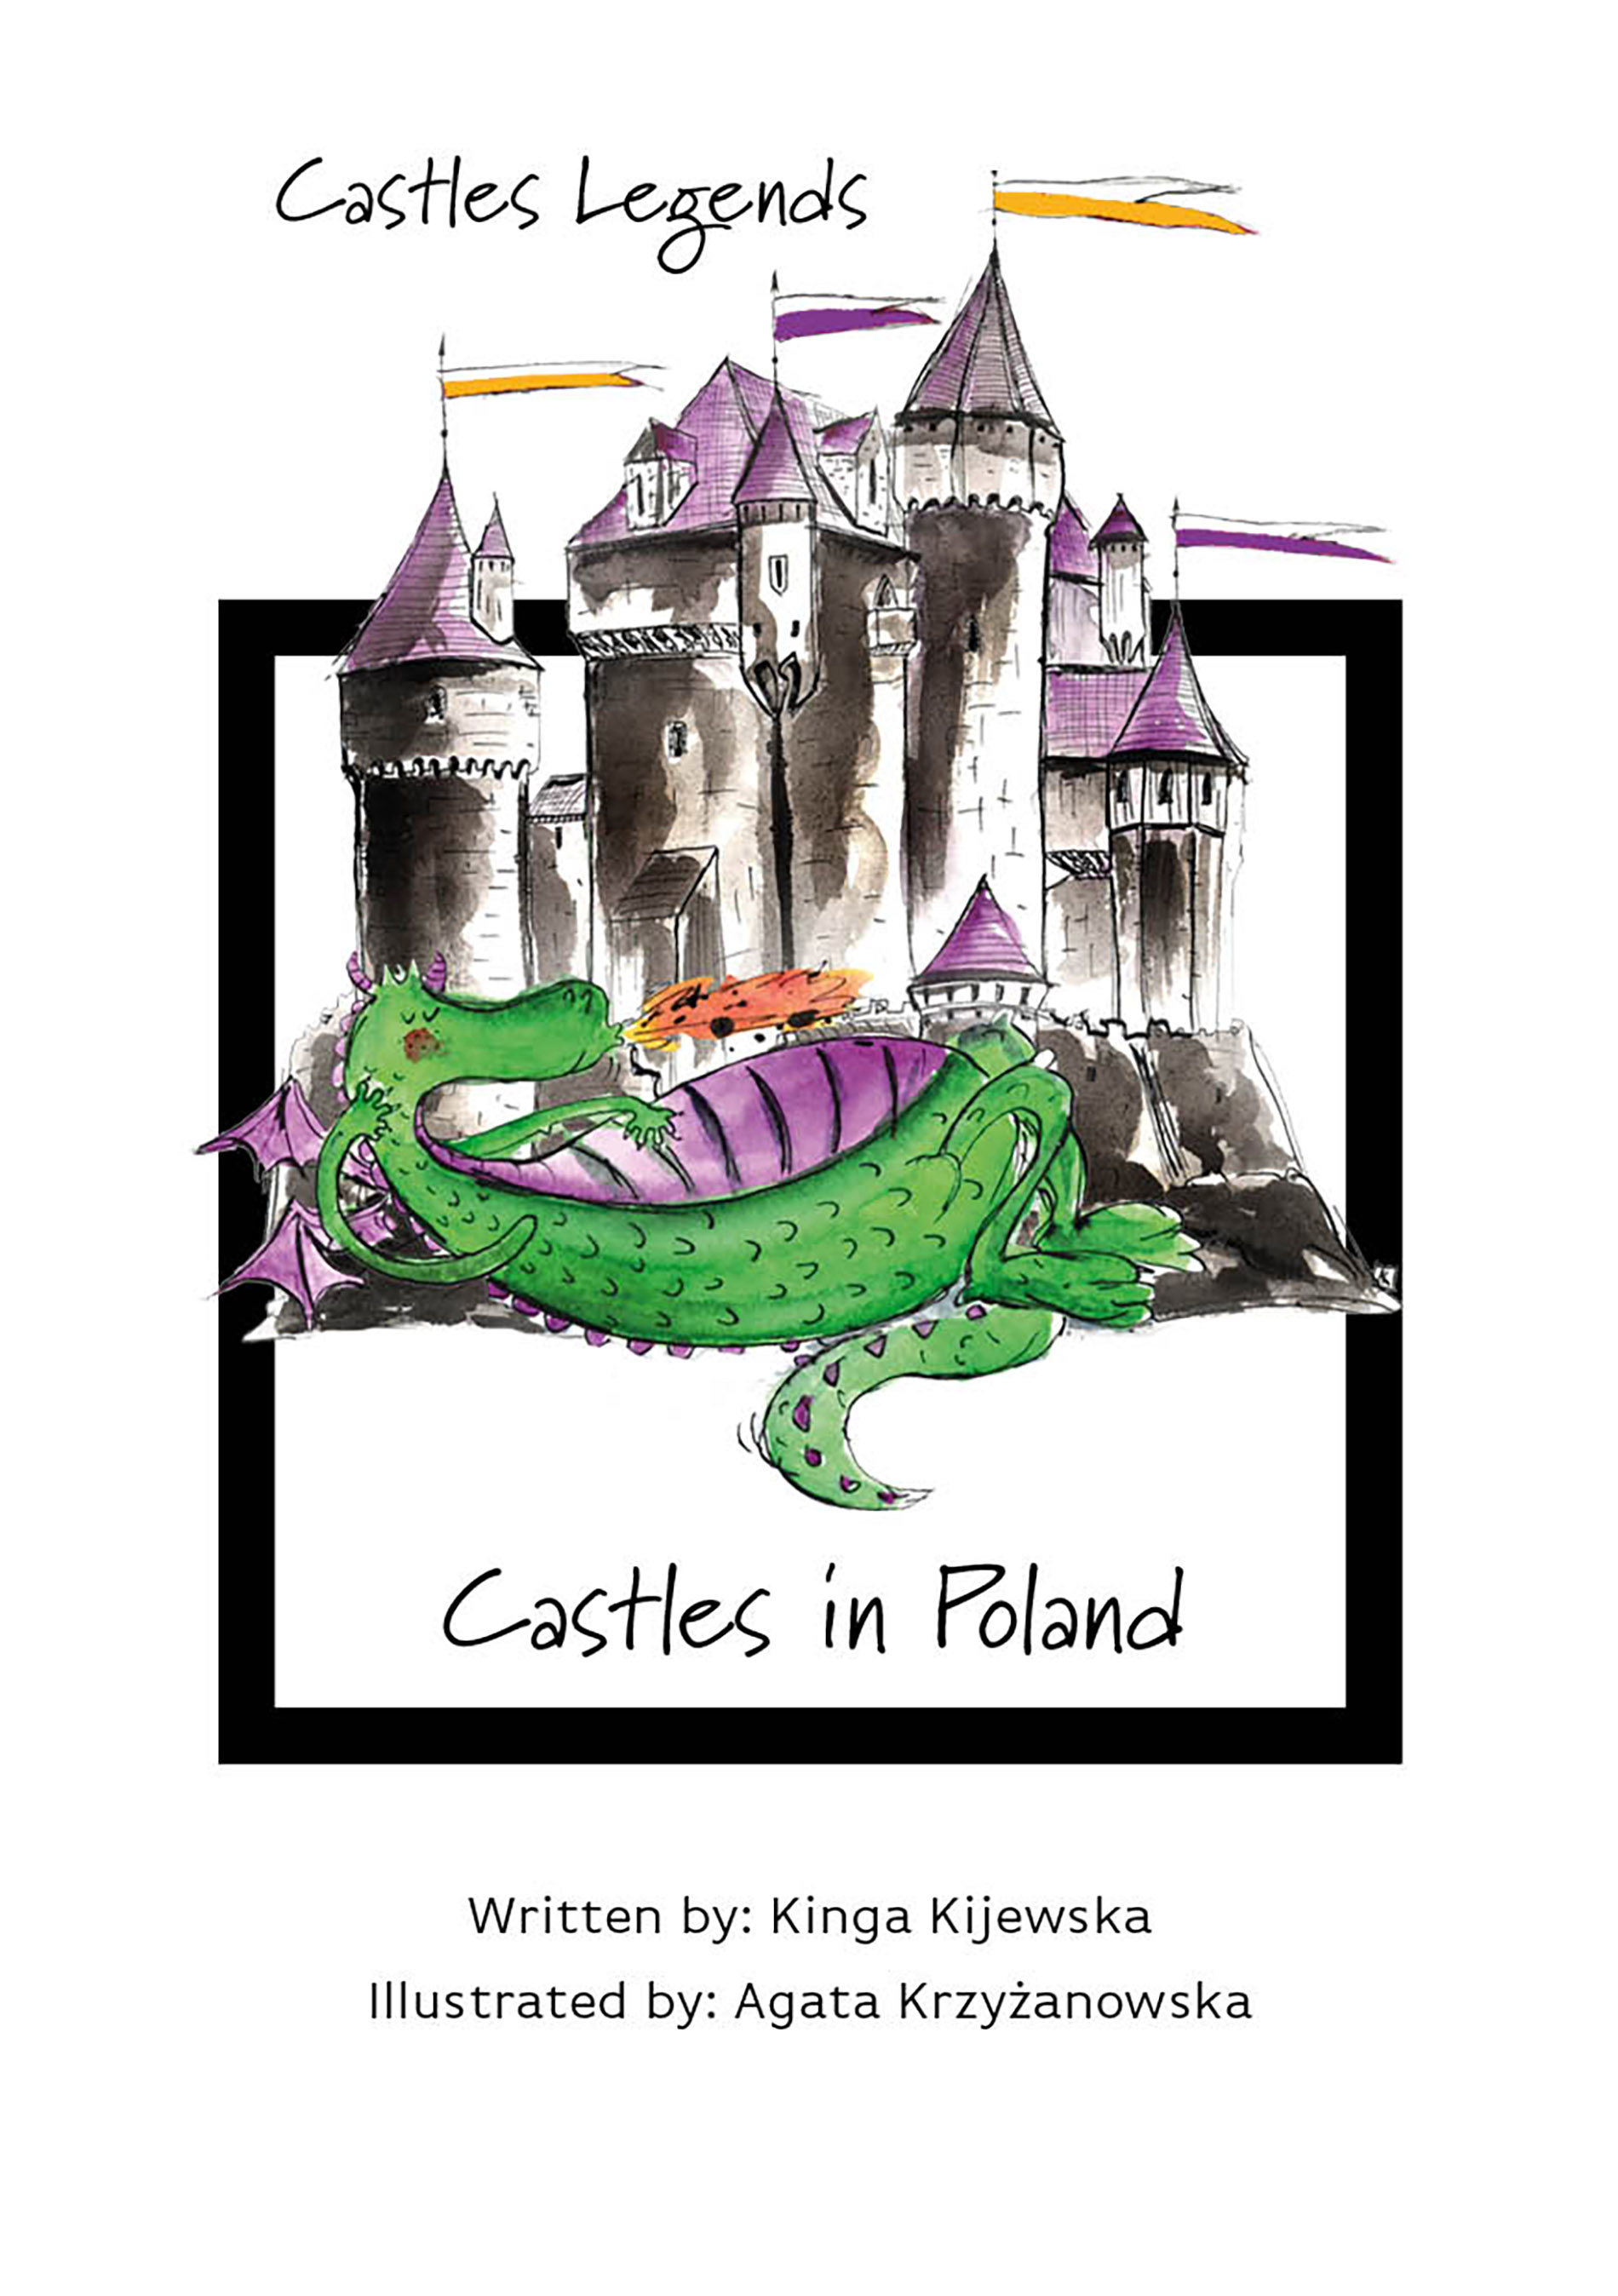 Castles Legends: Castles in Poland